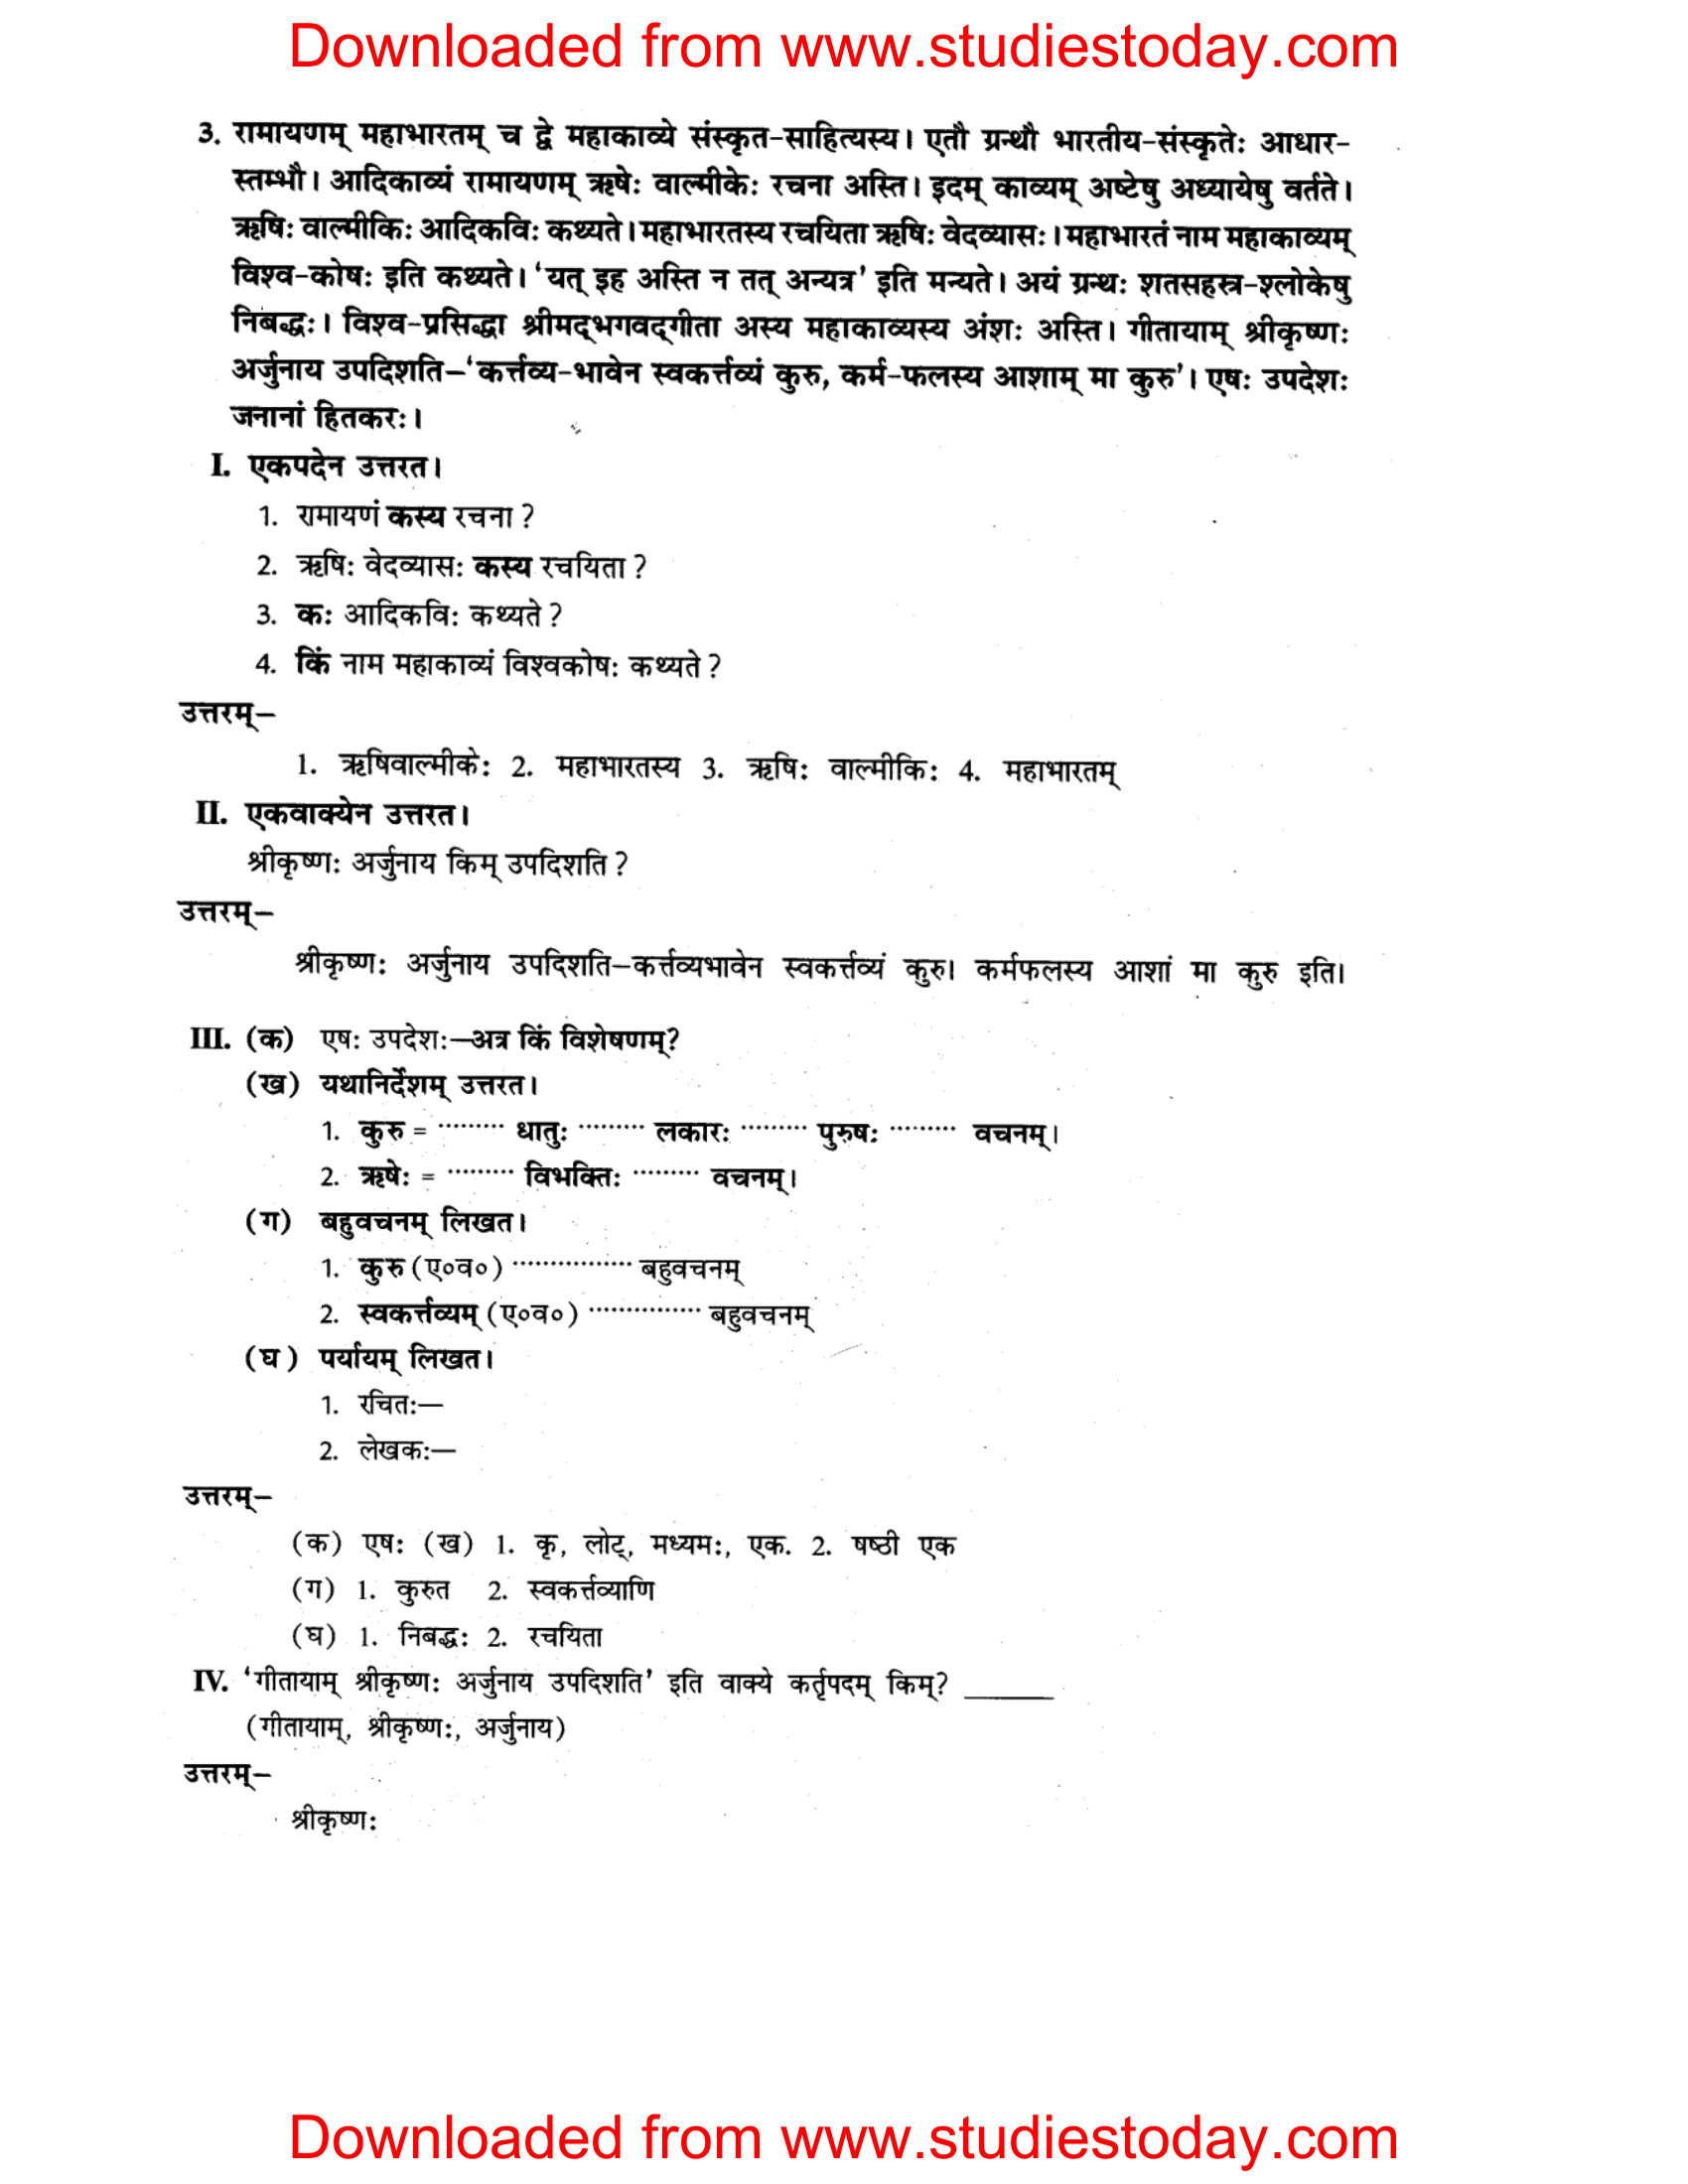 ncert-solutions-class-8-sanskrit-chapter-14-apthint-avbodhan-abhyas-3